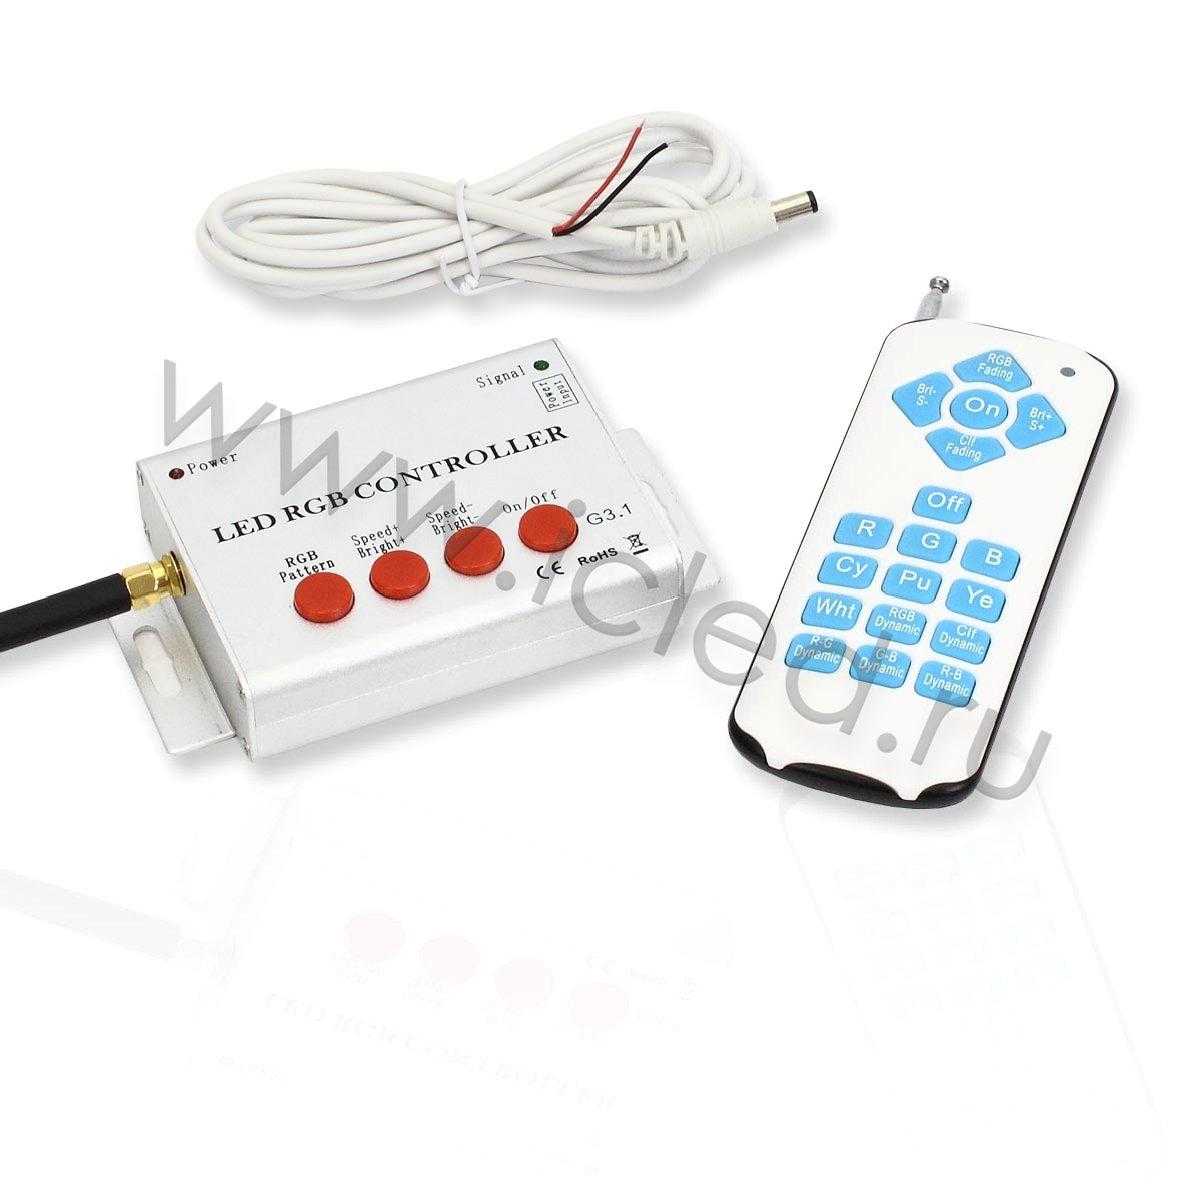 Светодиодные светильники Контроллер RGB для светильников PAR56 PL20 (12V, 1,5W)